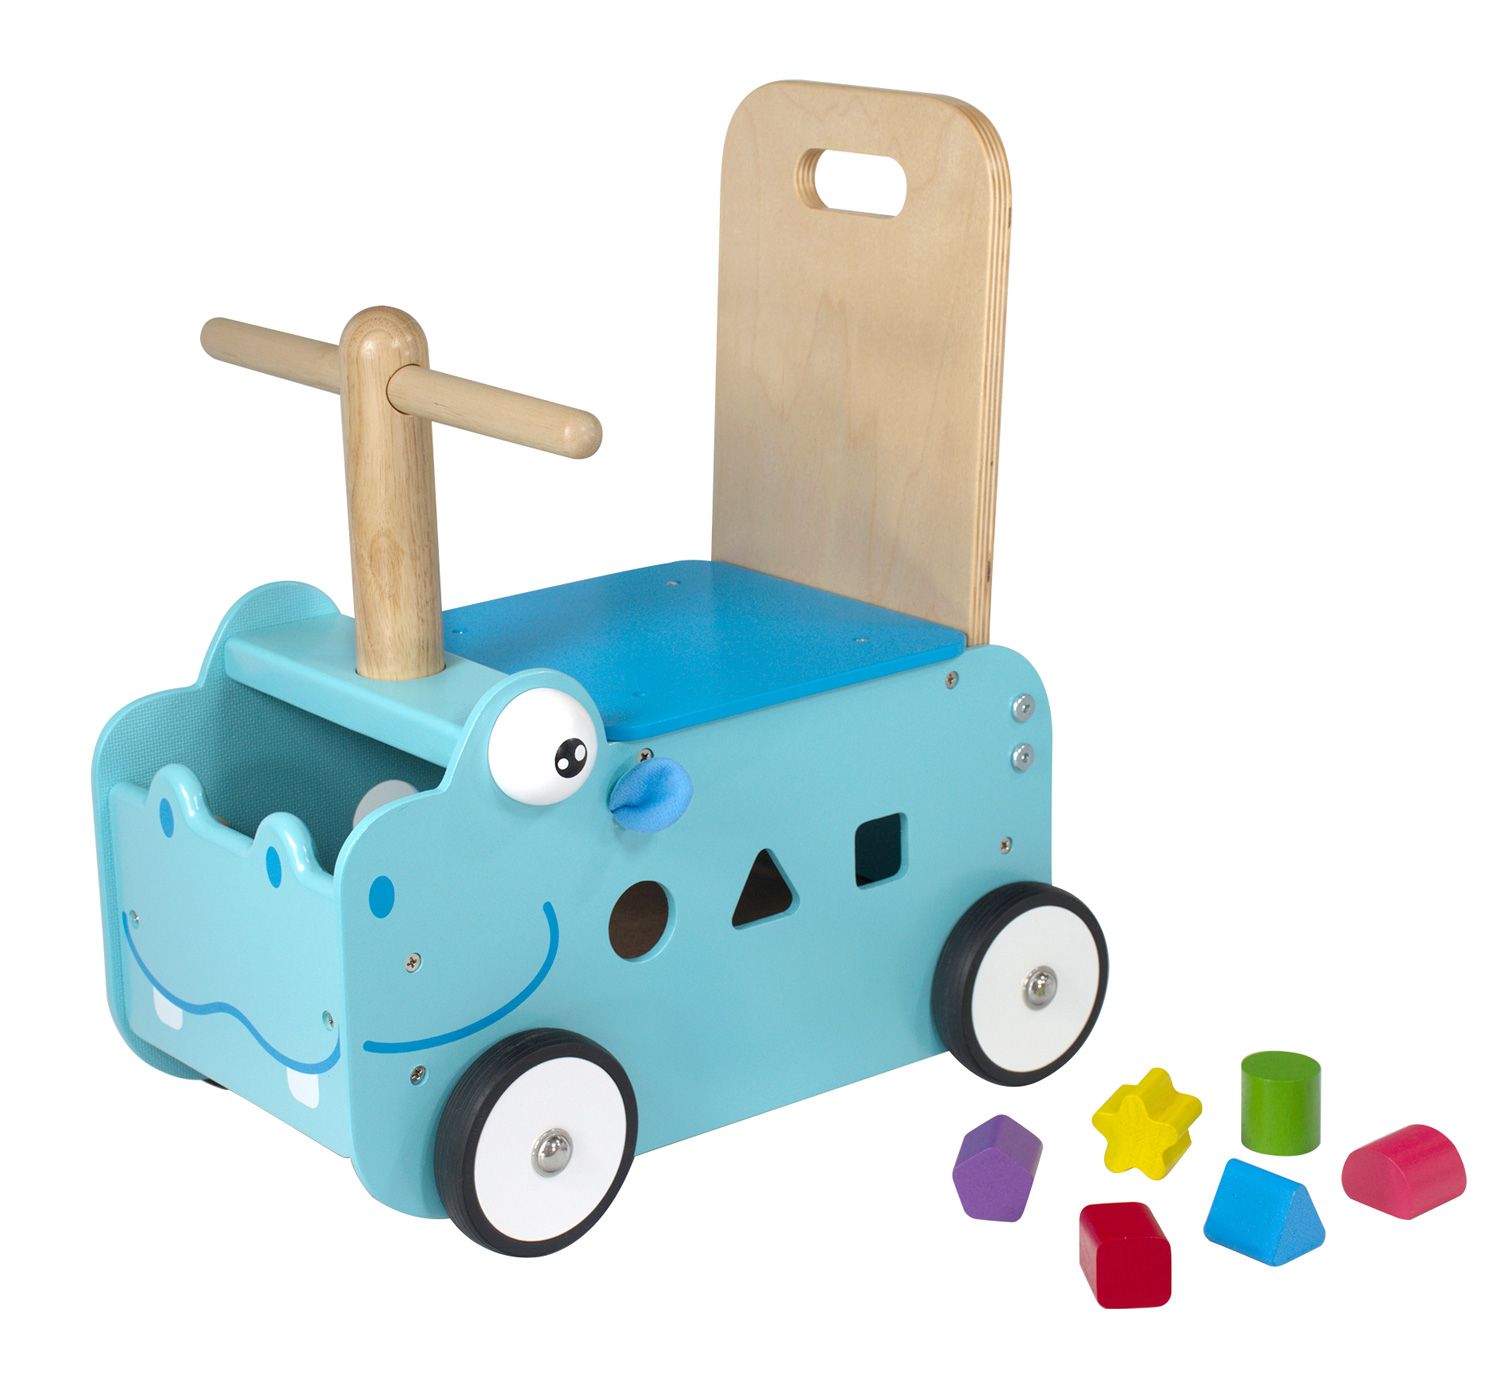 Hippopotame jouet en bois évolutif pour bébé 1 an, porteur pousseur, chariot